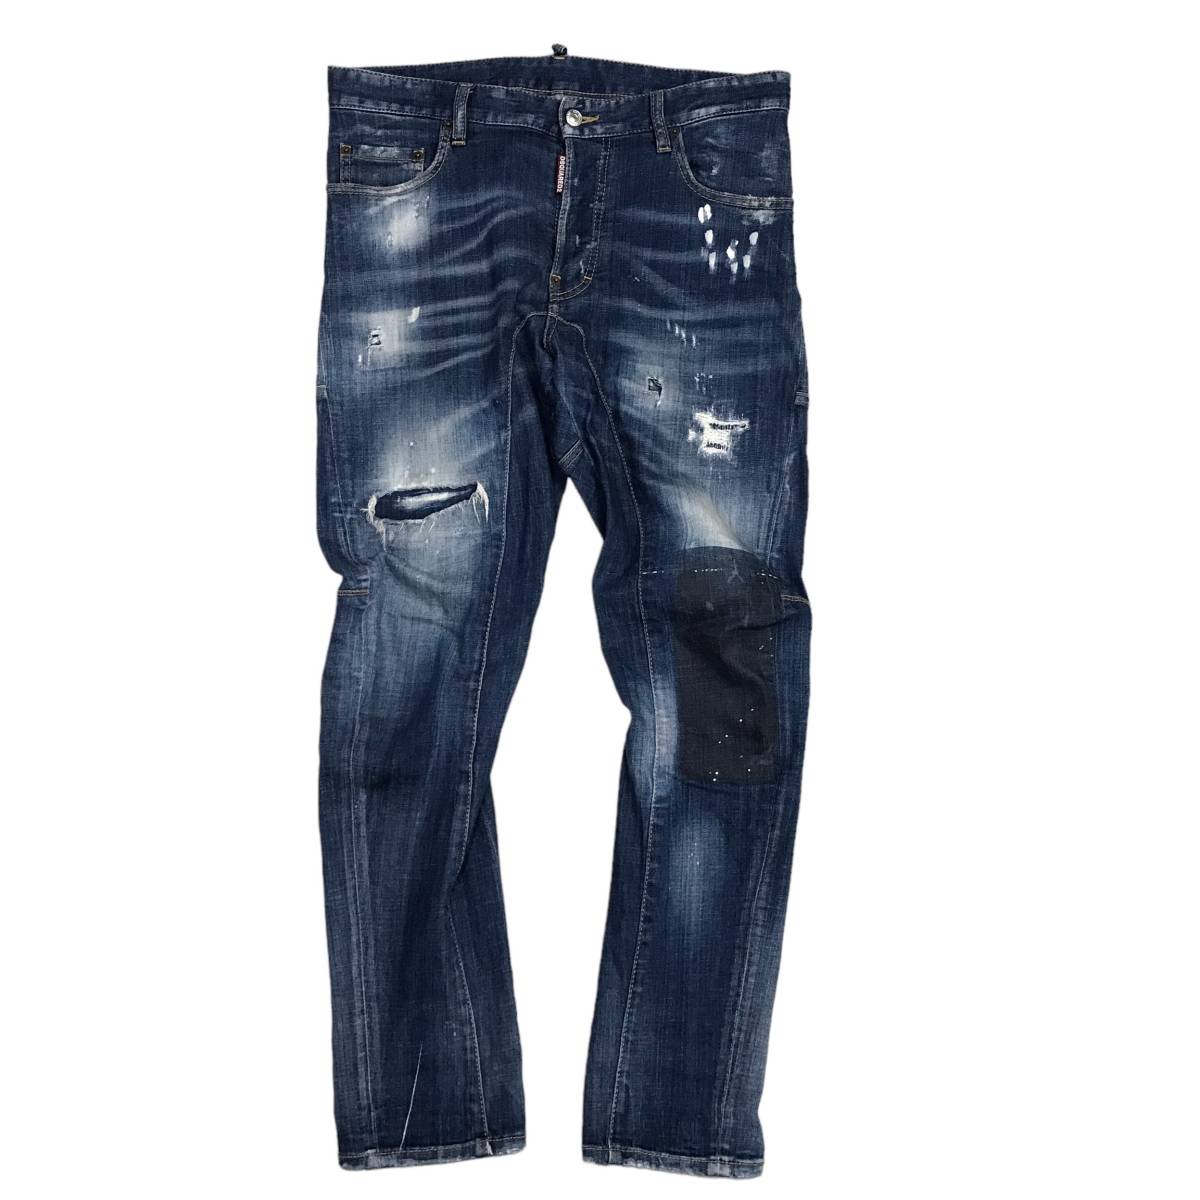 DSQUARED2 ディースクエアード Tidy Biker Jeans ボタンフライ デニム ジーンズ ボトムス 2018 S71LB0493 サイズ48 店舗受取可